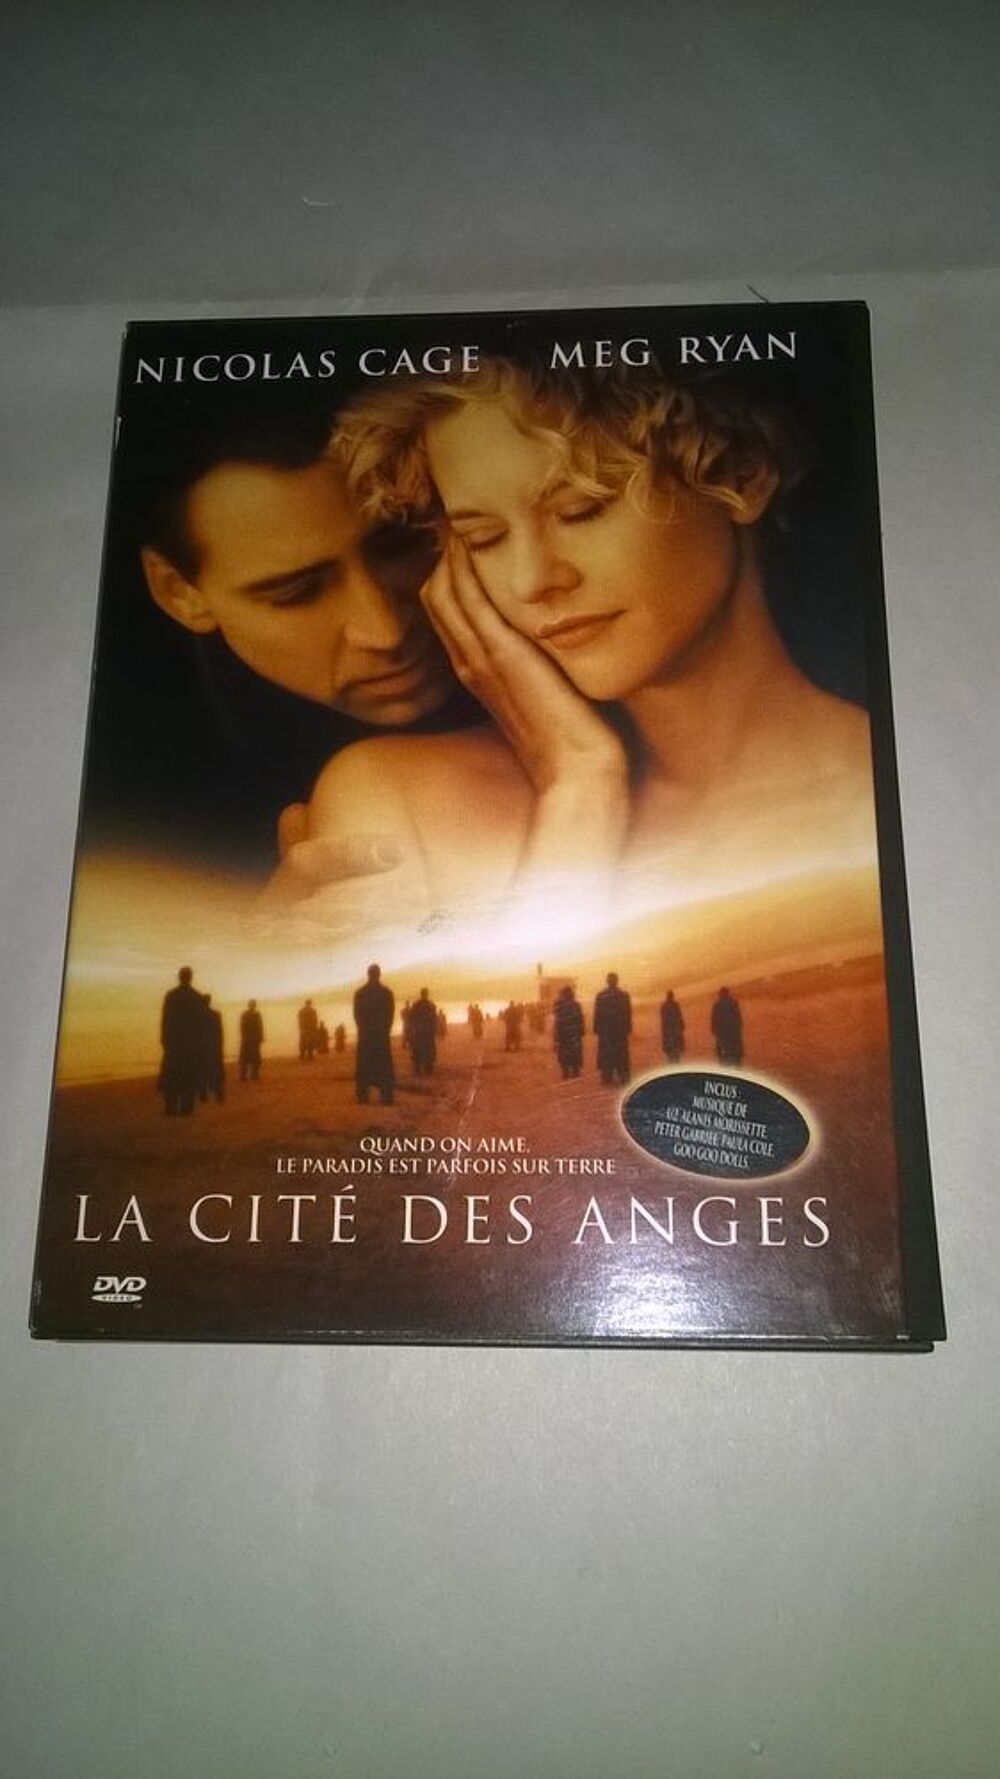 DVD La Cit&eacute; des anges
Nicolas Cage, Meg Ryan 
1998
Excell DVD et blu-ray